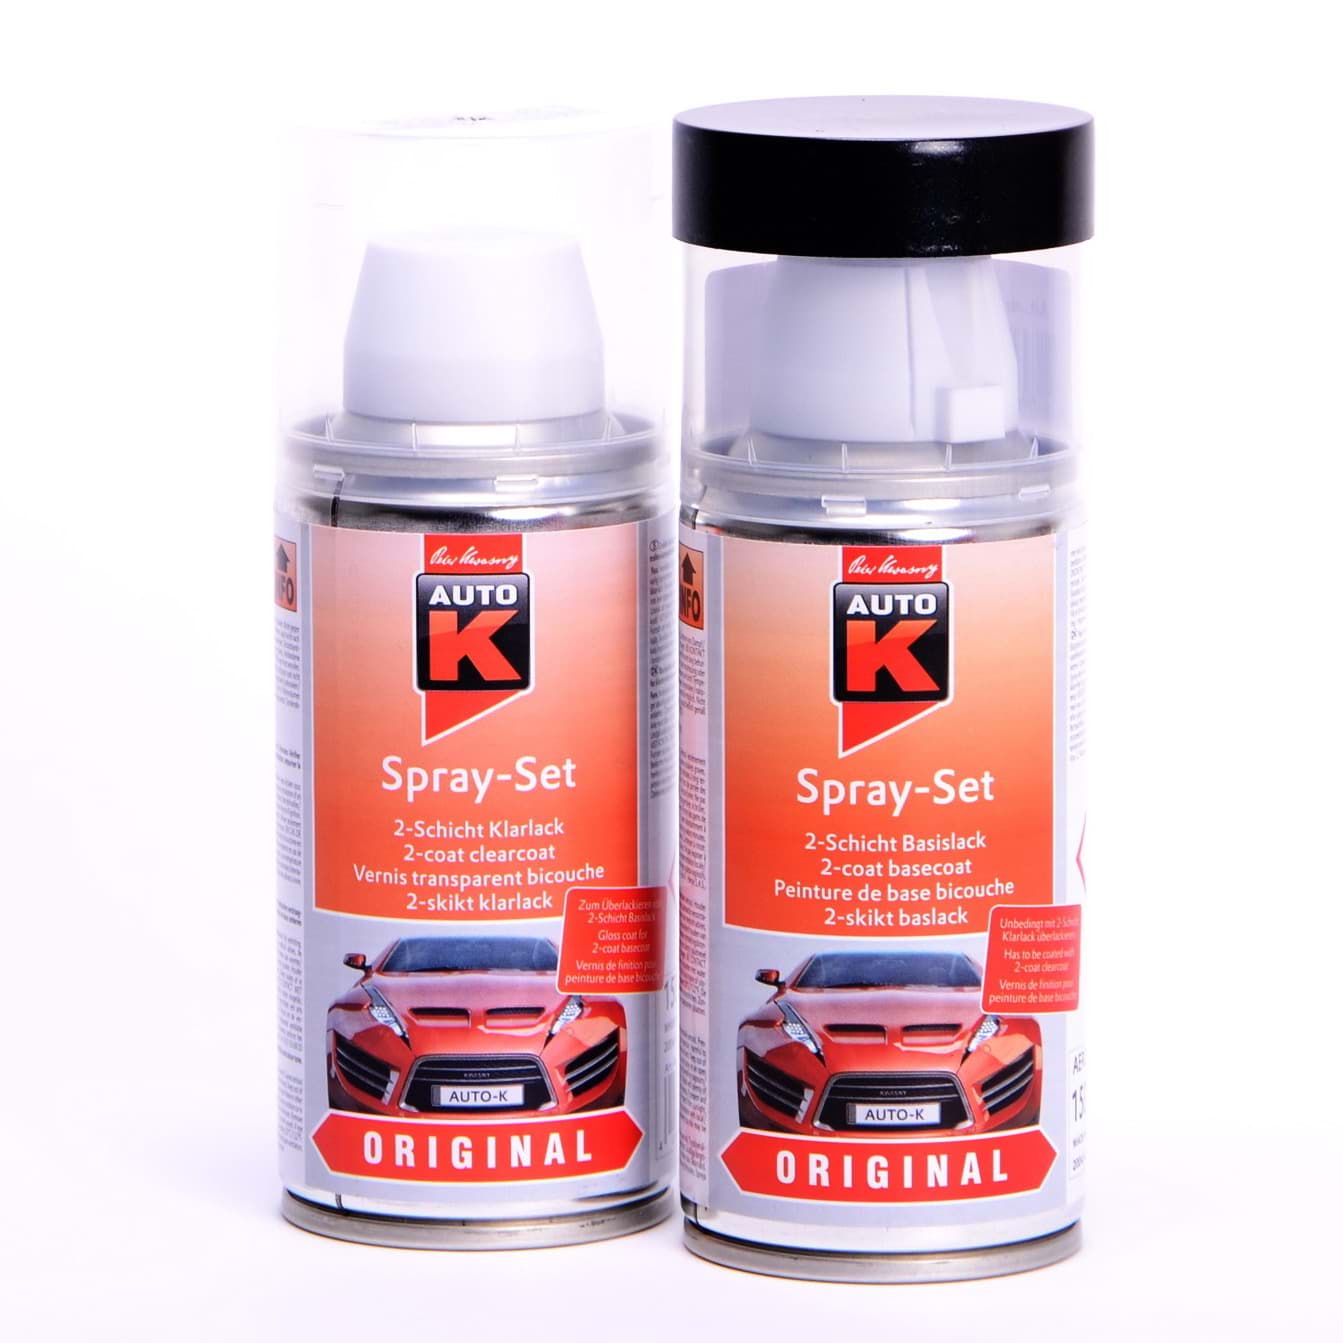 Auto-K Spray-Set Autolack für BMW 237 Granitsilber met 27251 resmi